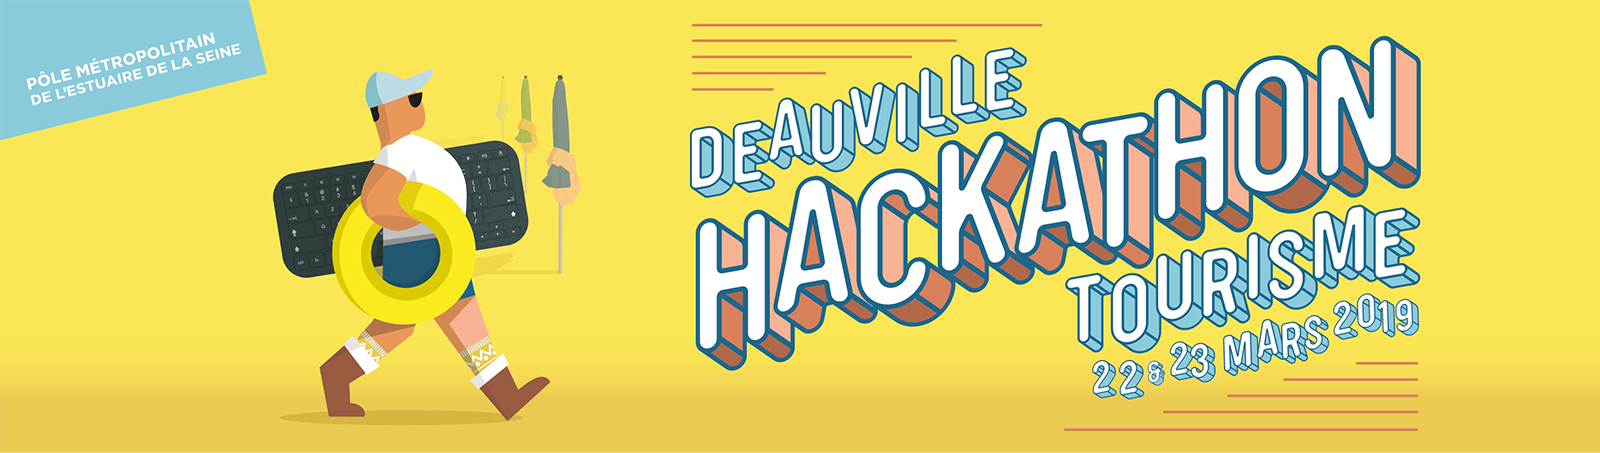 Hackathon tourisme à Deauville en mars 2019